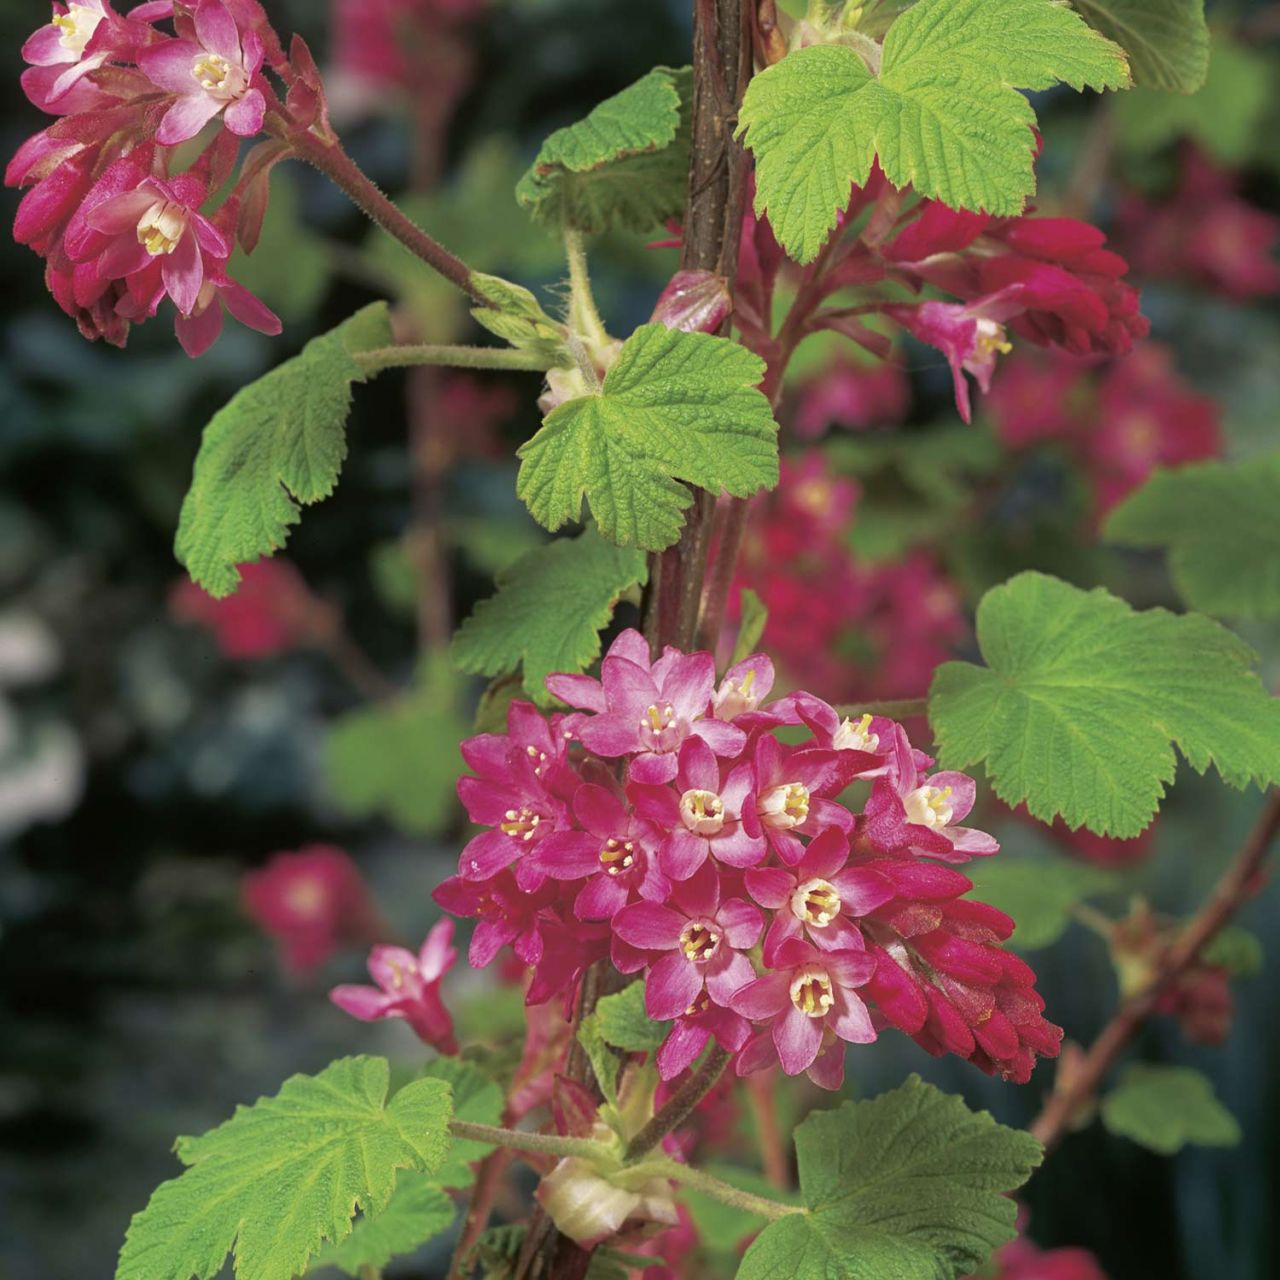 Kategorie <b>Blütensträucher und Ziergehölze </b> - Blutjohannisbeere 'King Edward VII' - Ribes sanguineum 'King Edward VII'